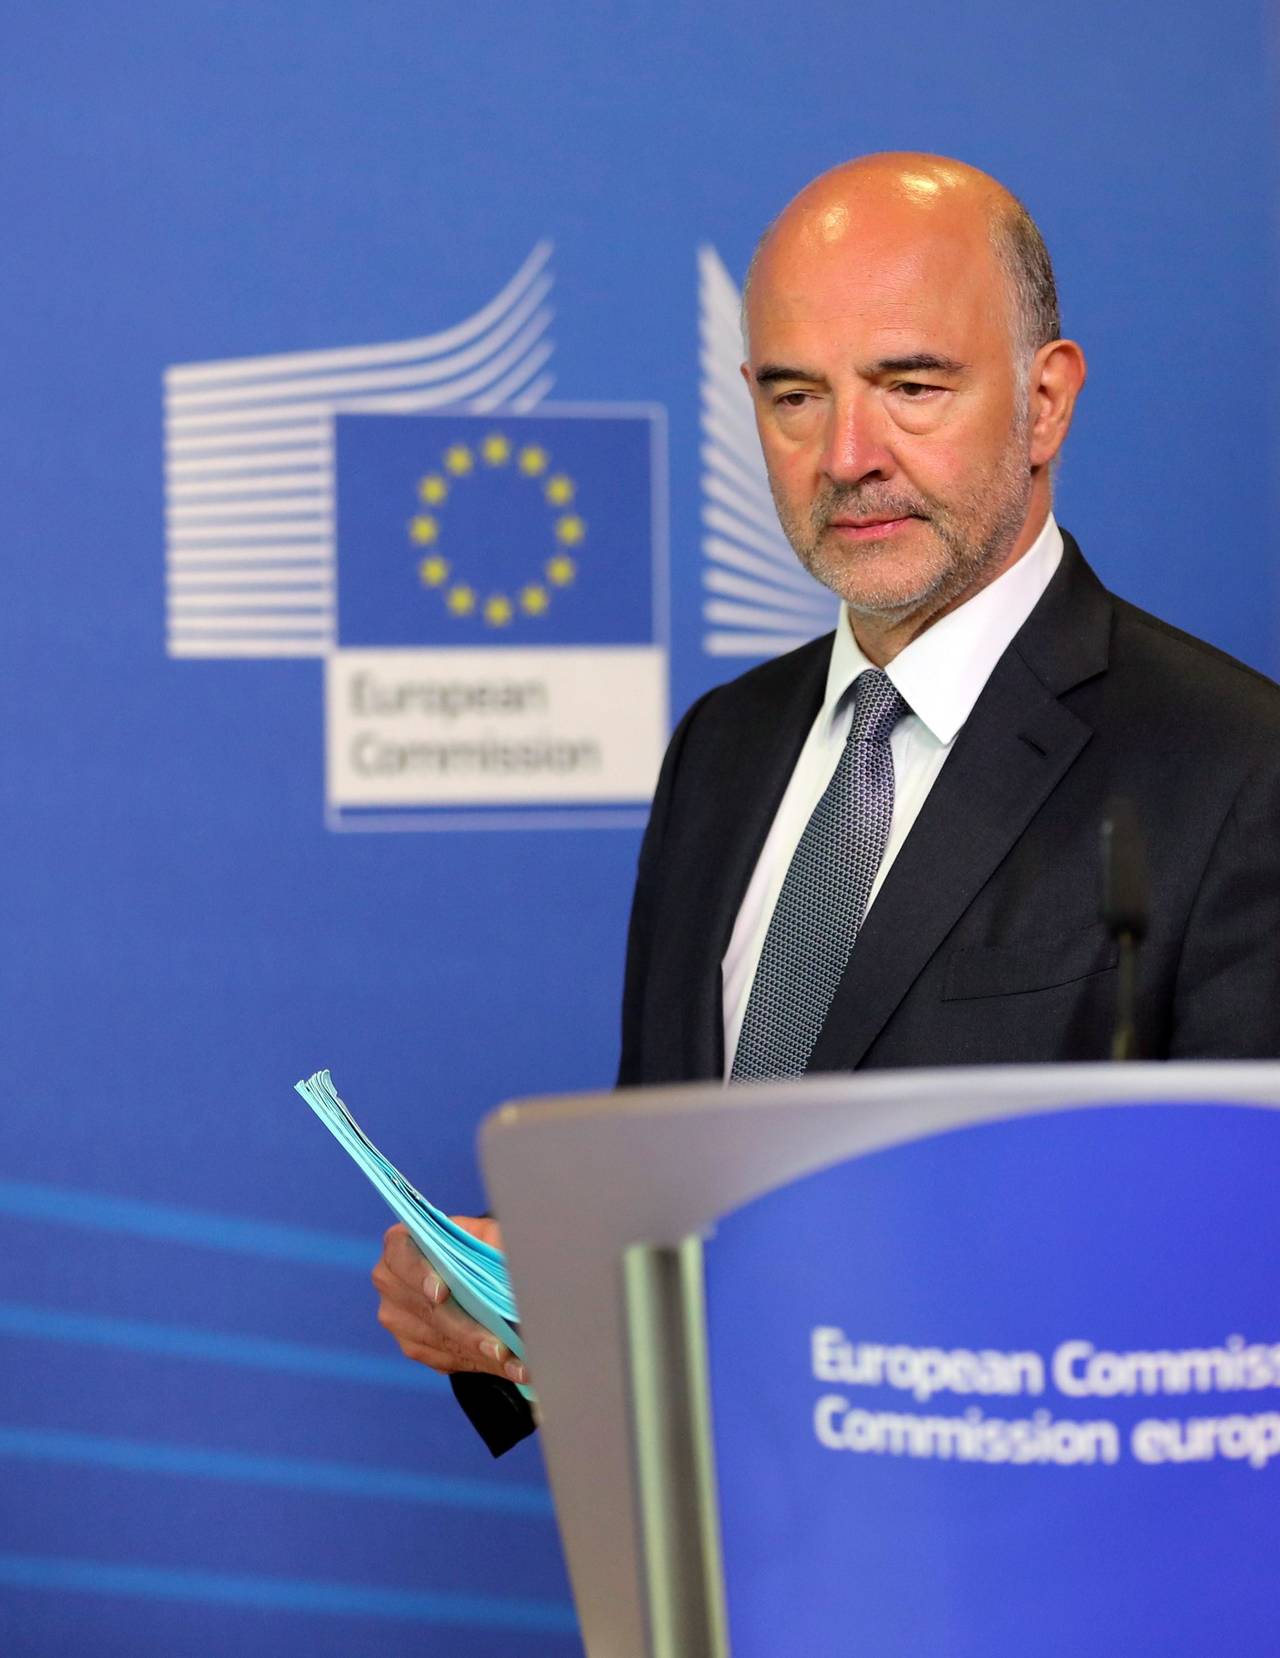 Tras ocho años.  Moscovici celebró hoy el fin 'histórico' de ocho años de programas de rescate de la economía de Grecia, que consideró que fueron 'dolorosos' para el pueblo heleno. (EFE)